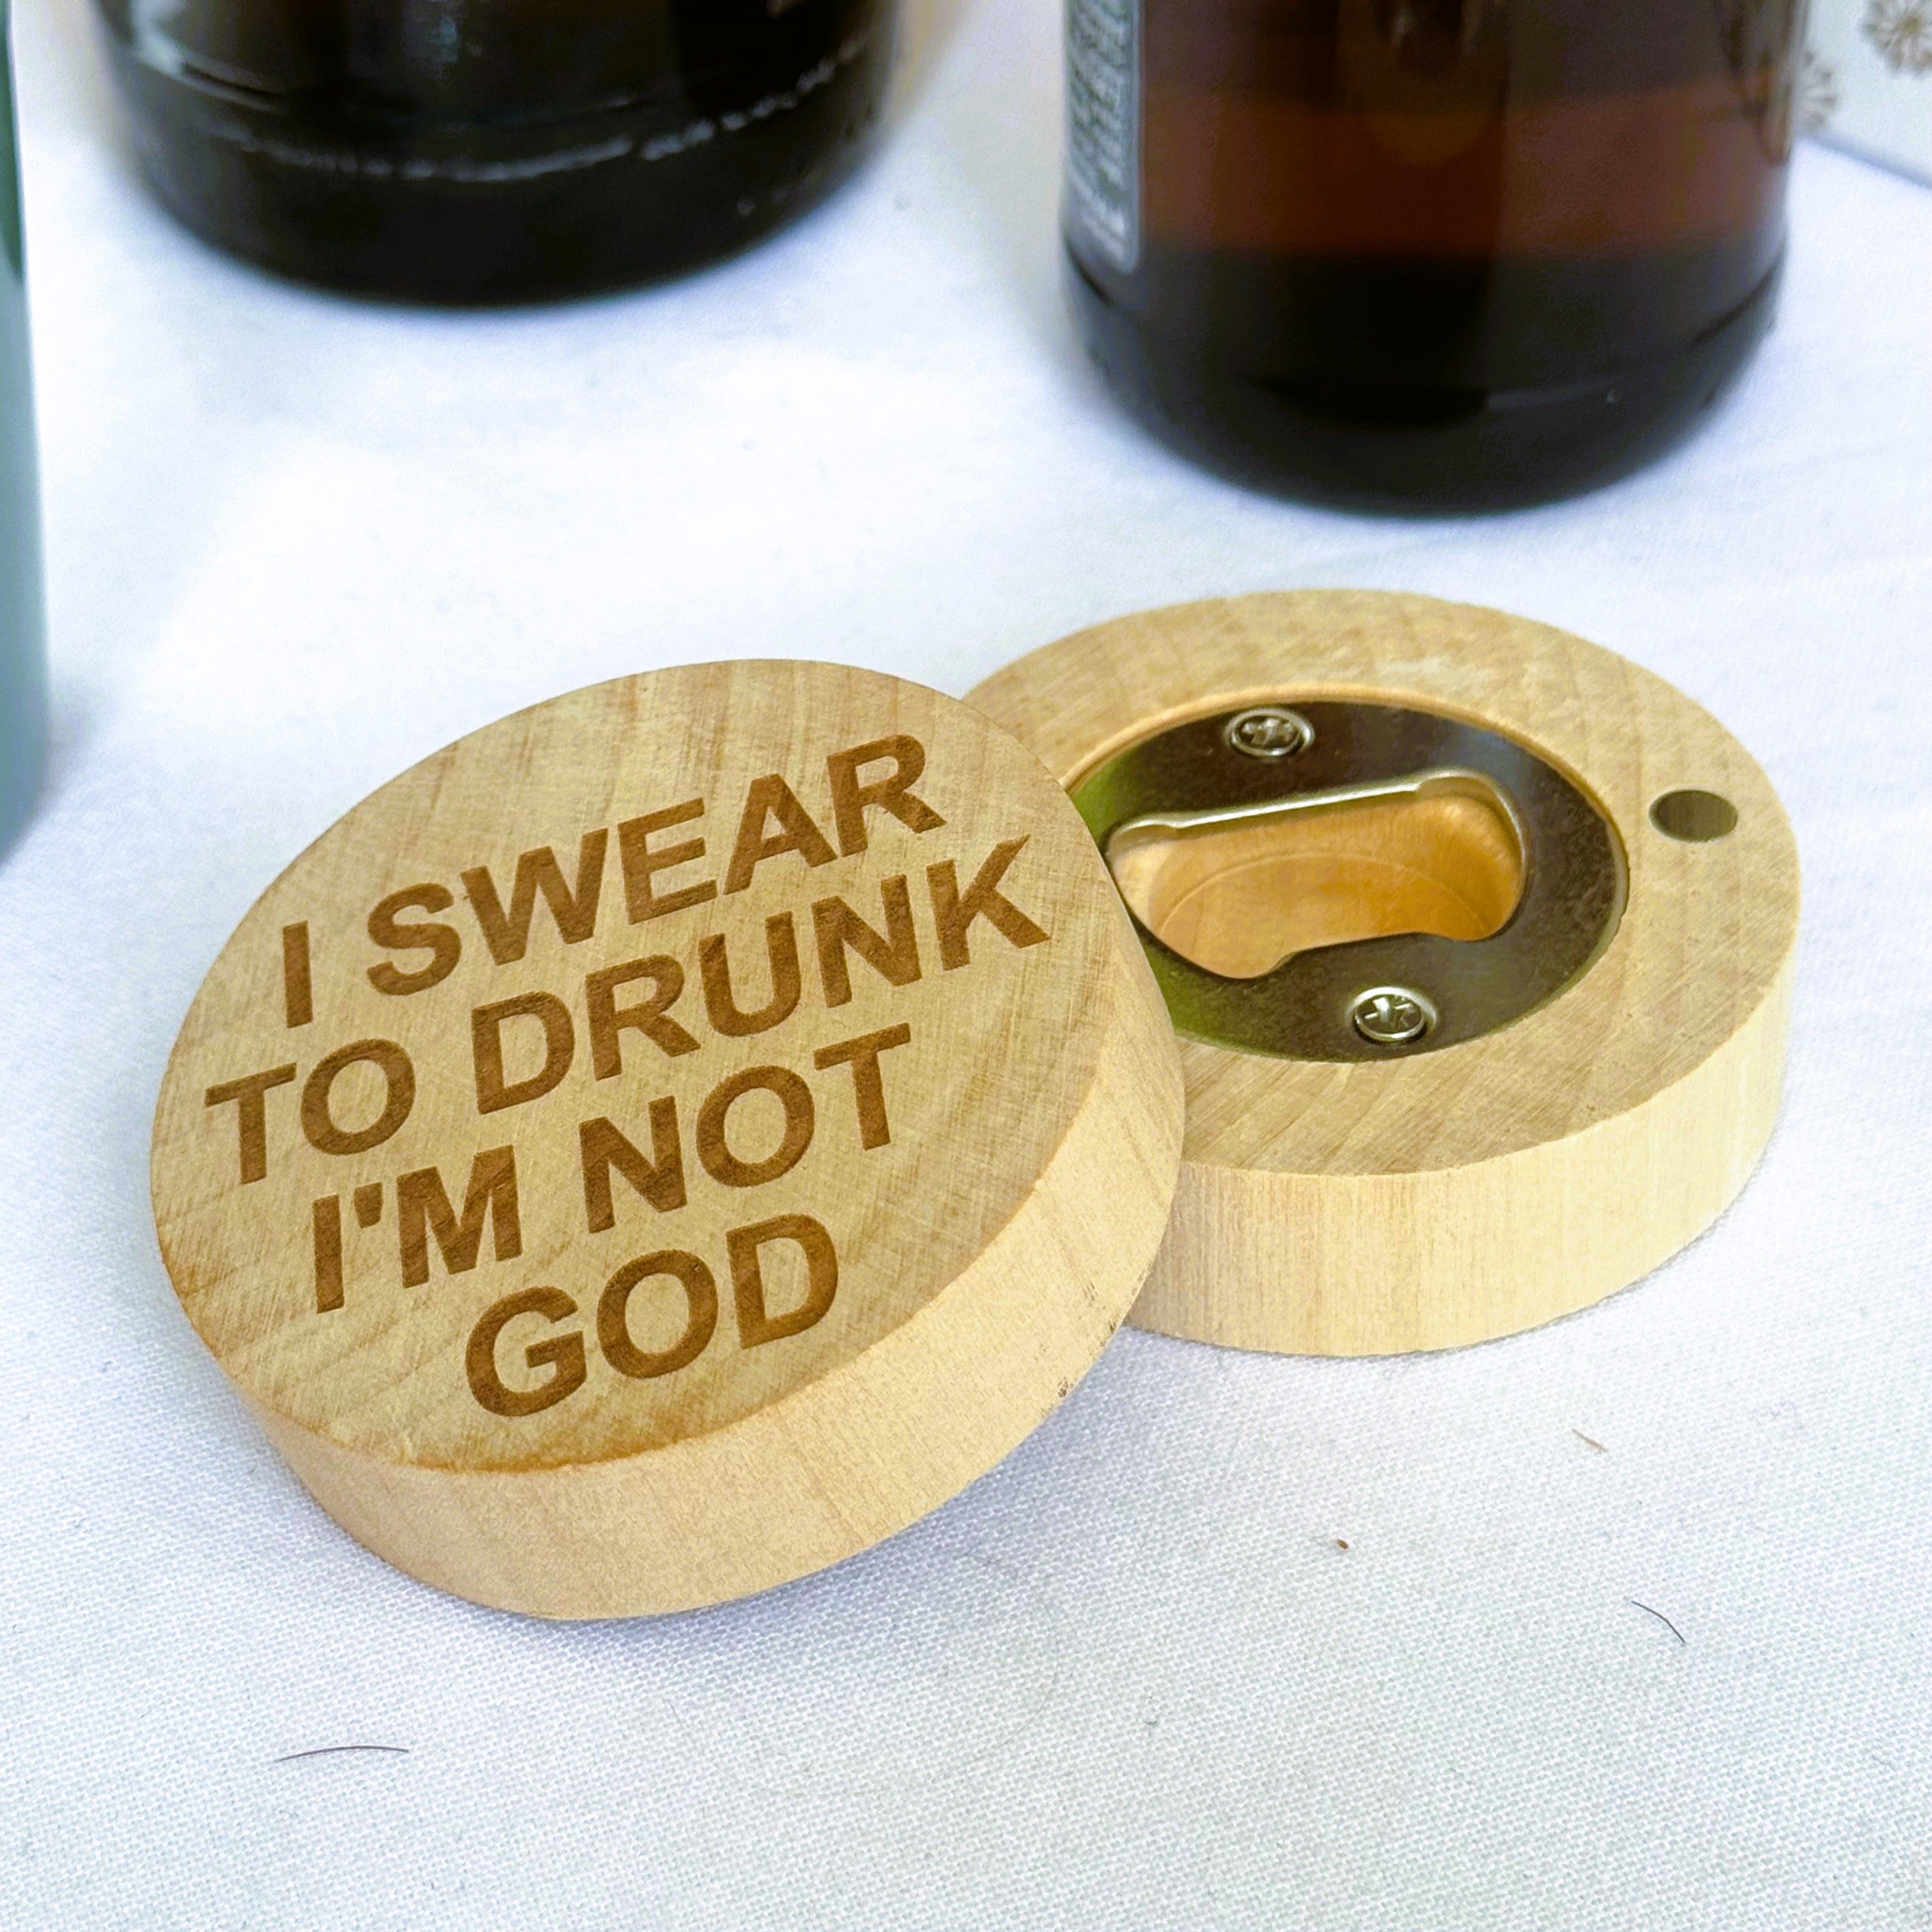 Wooden fridge magnet bottle opener - I swear to drunk I'm not god